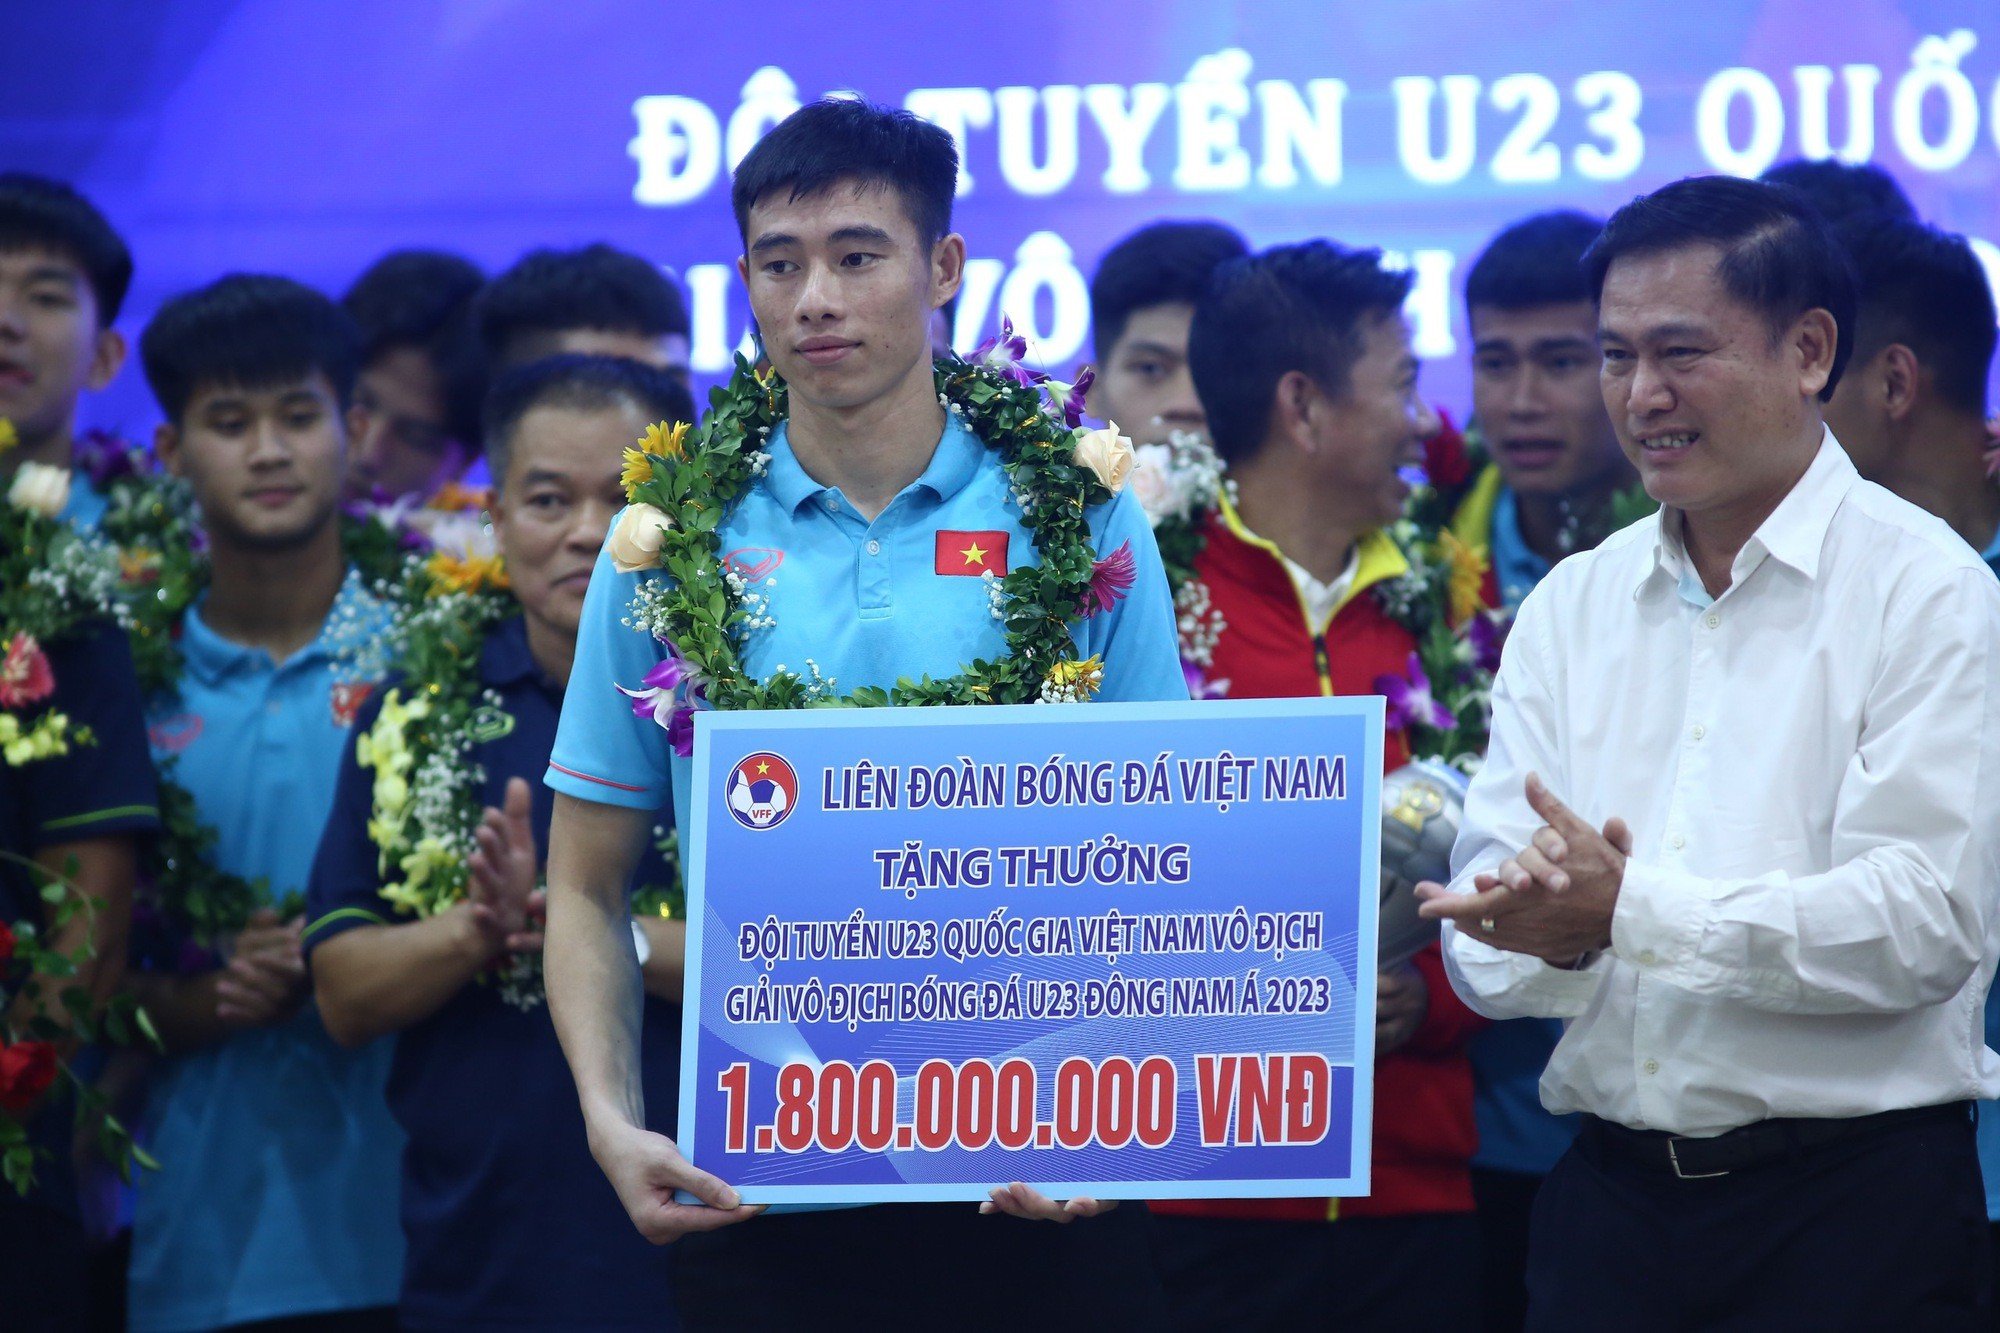 U23 Việt Nam nhận thưởng 1.8 tỷ VNĐ sau chức vô địch U23 Đông Nam Á 2023